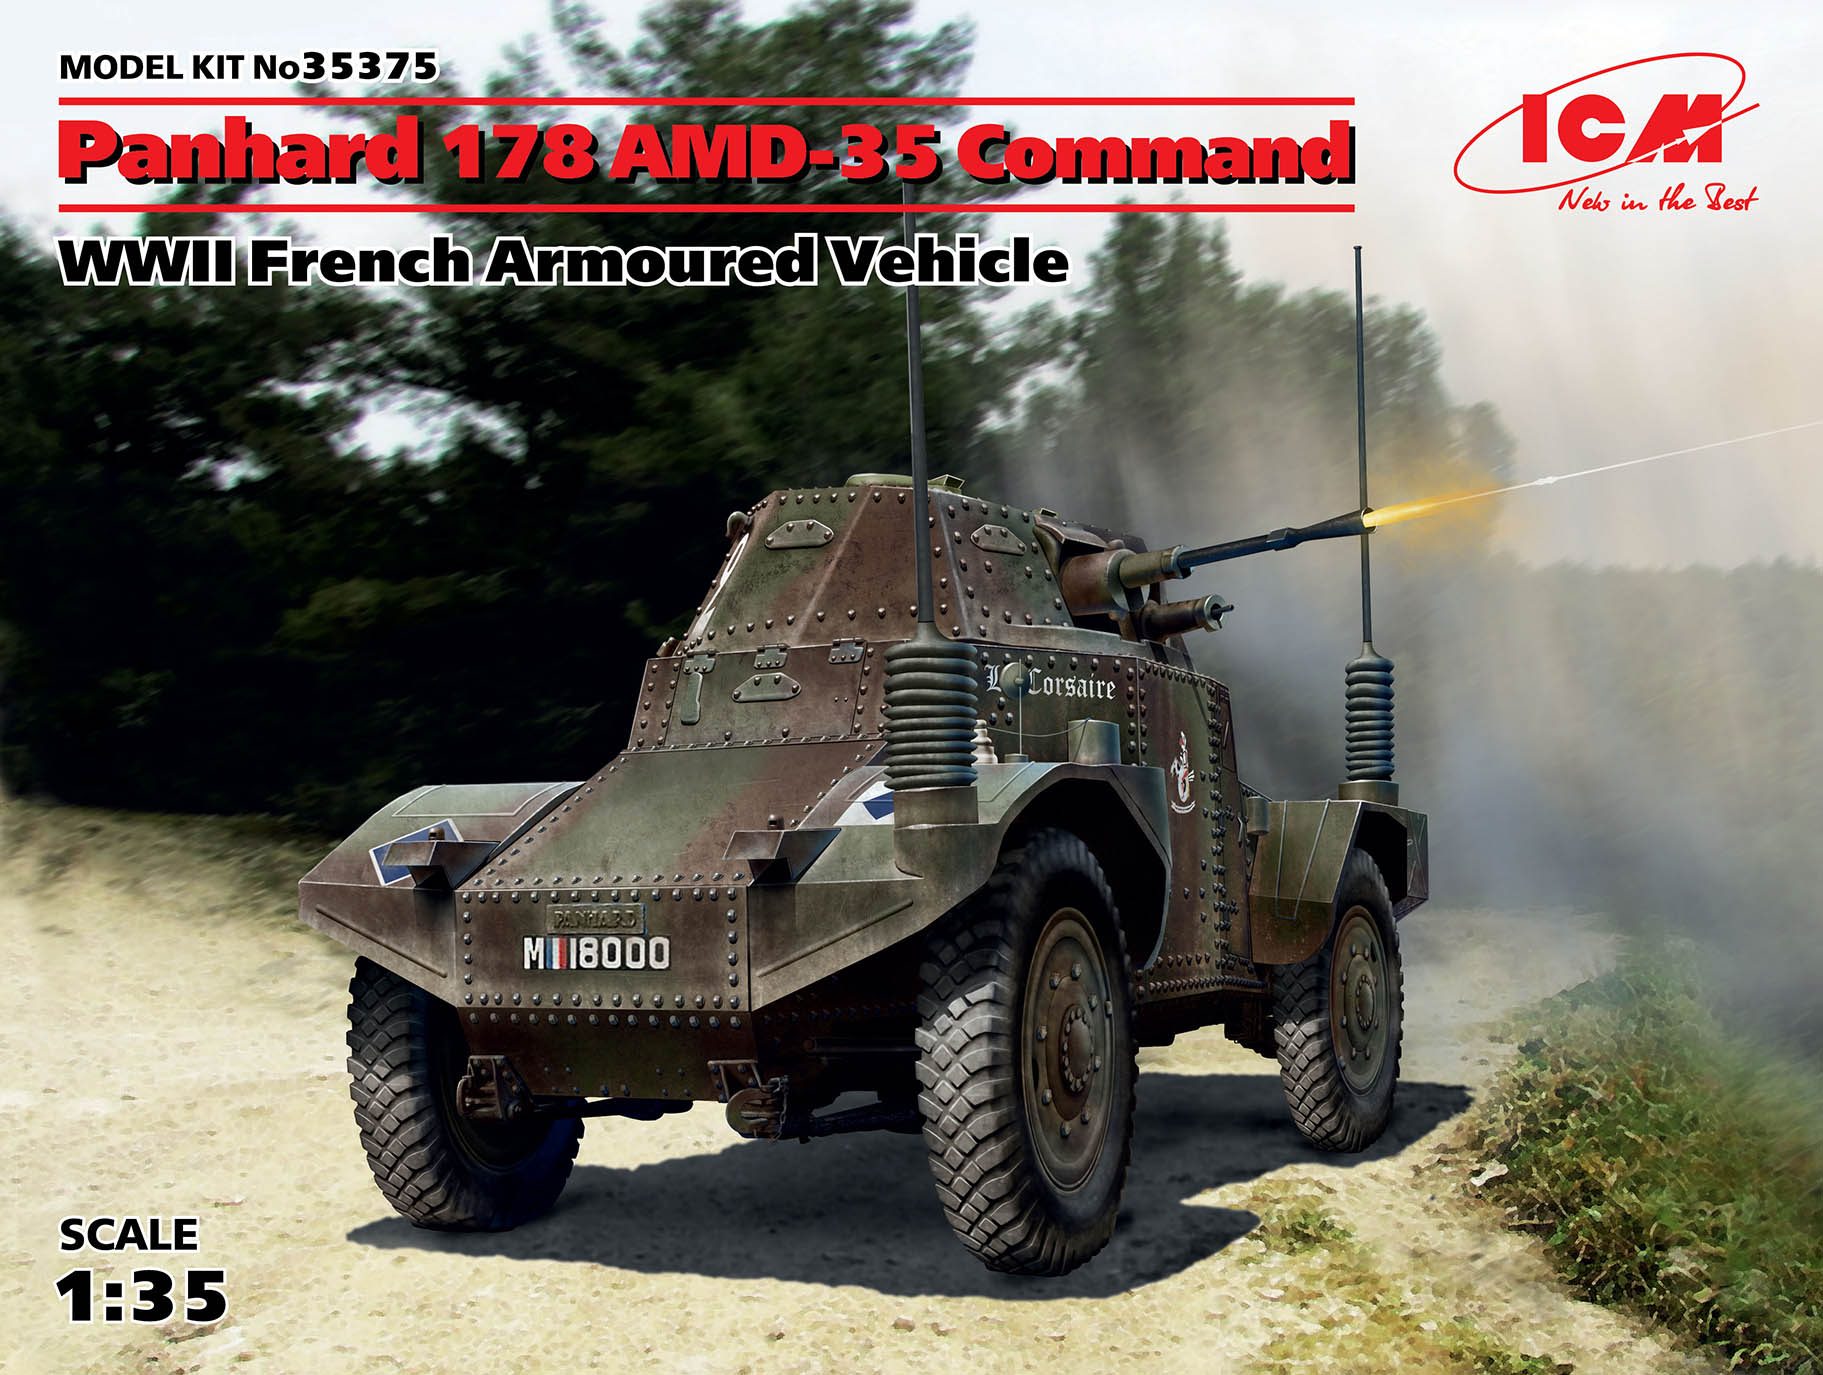 1/35　フランス パナール AMD-35 (178) 装甲指揮車